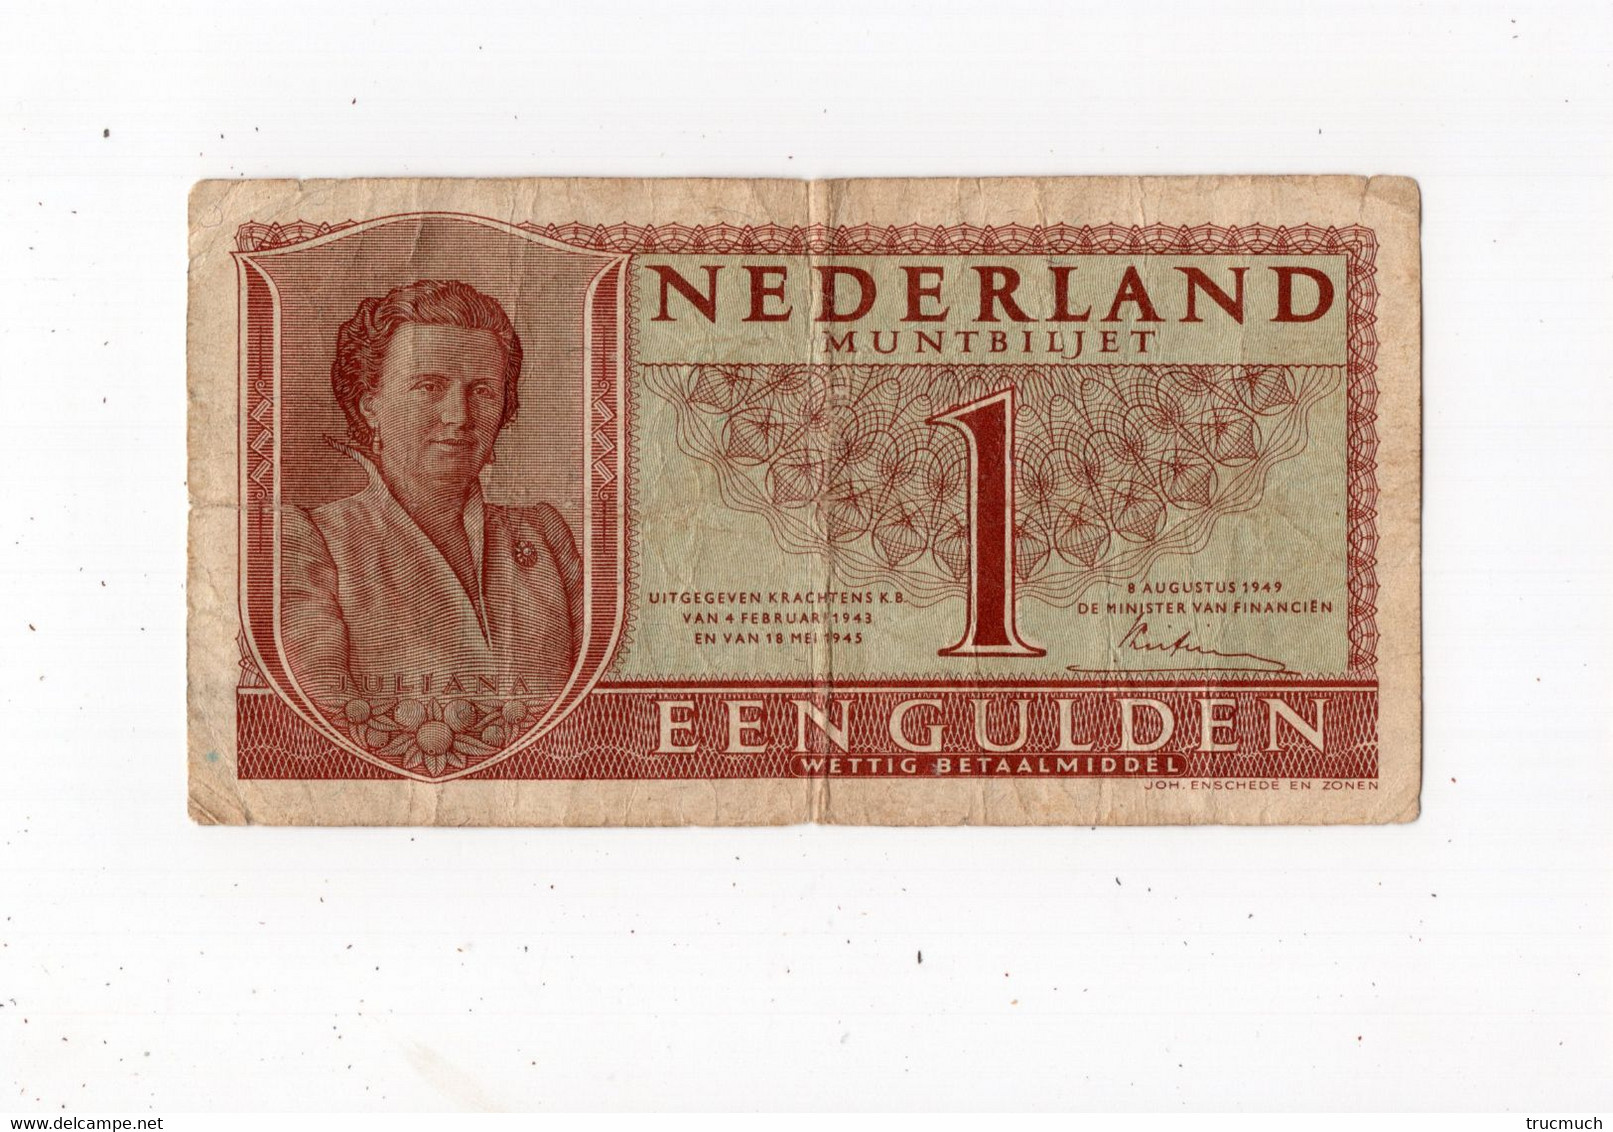 PAYS-BAS - Een Gulden - 08.08.1949 - 1 Gulden